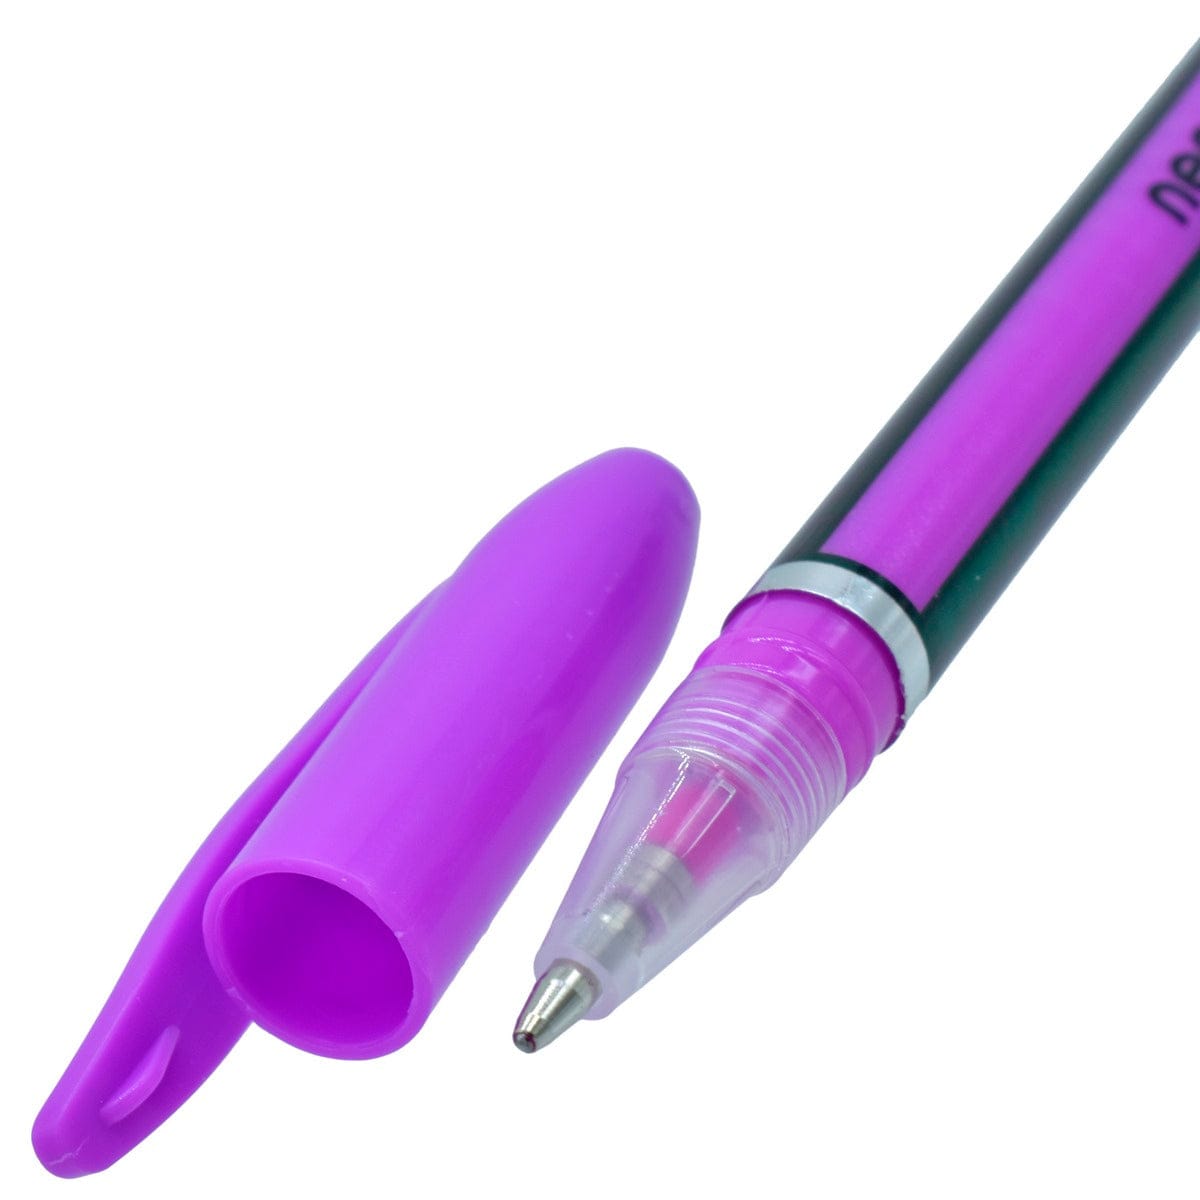 jags-mumbai Mandala & Art Pens Glitter Pen Neon Color 1.0MM 24Pcs Set HG6107-24